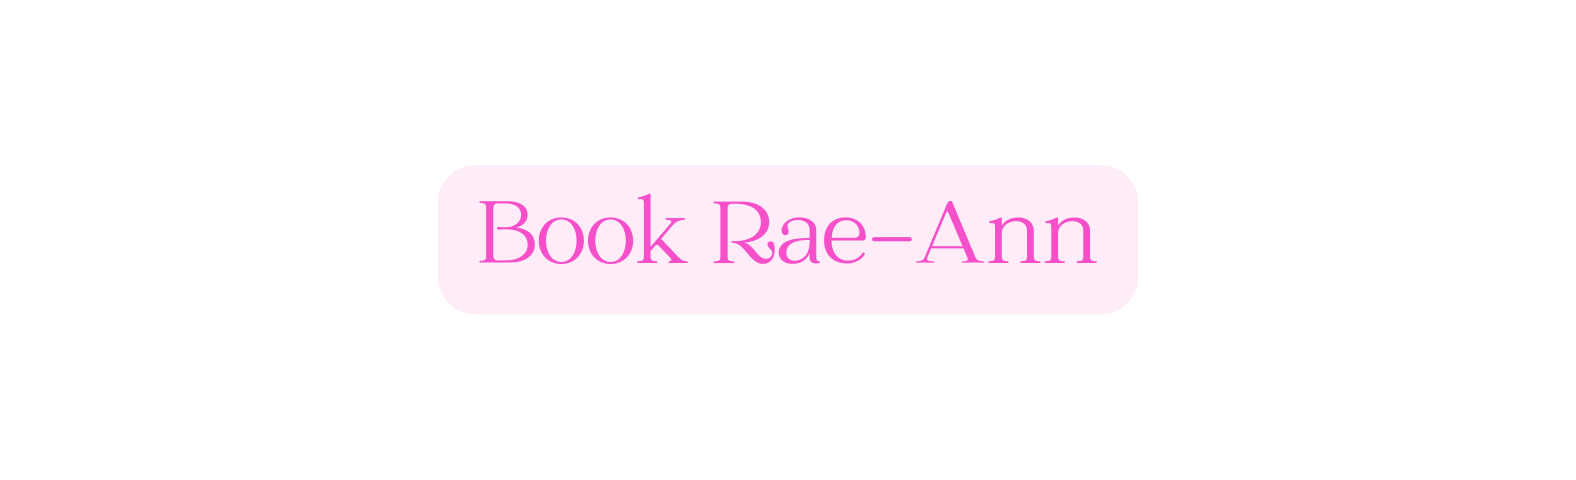 Book Rae Ann